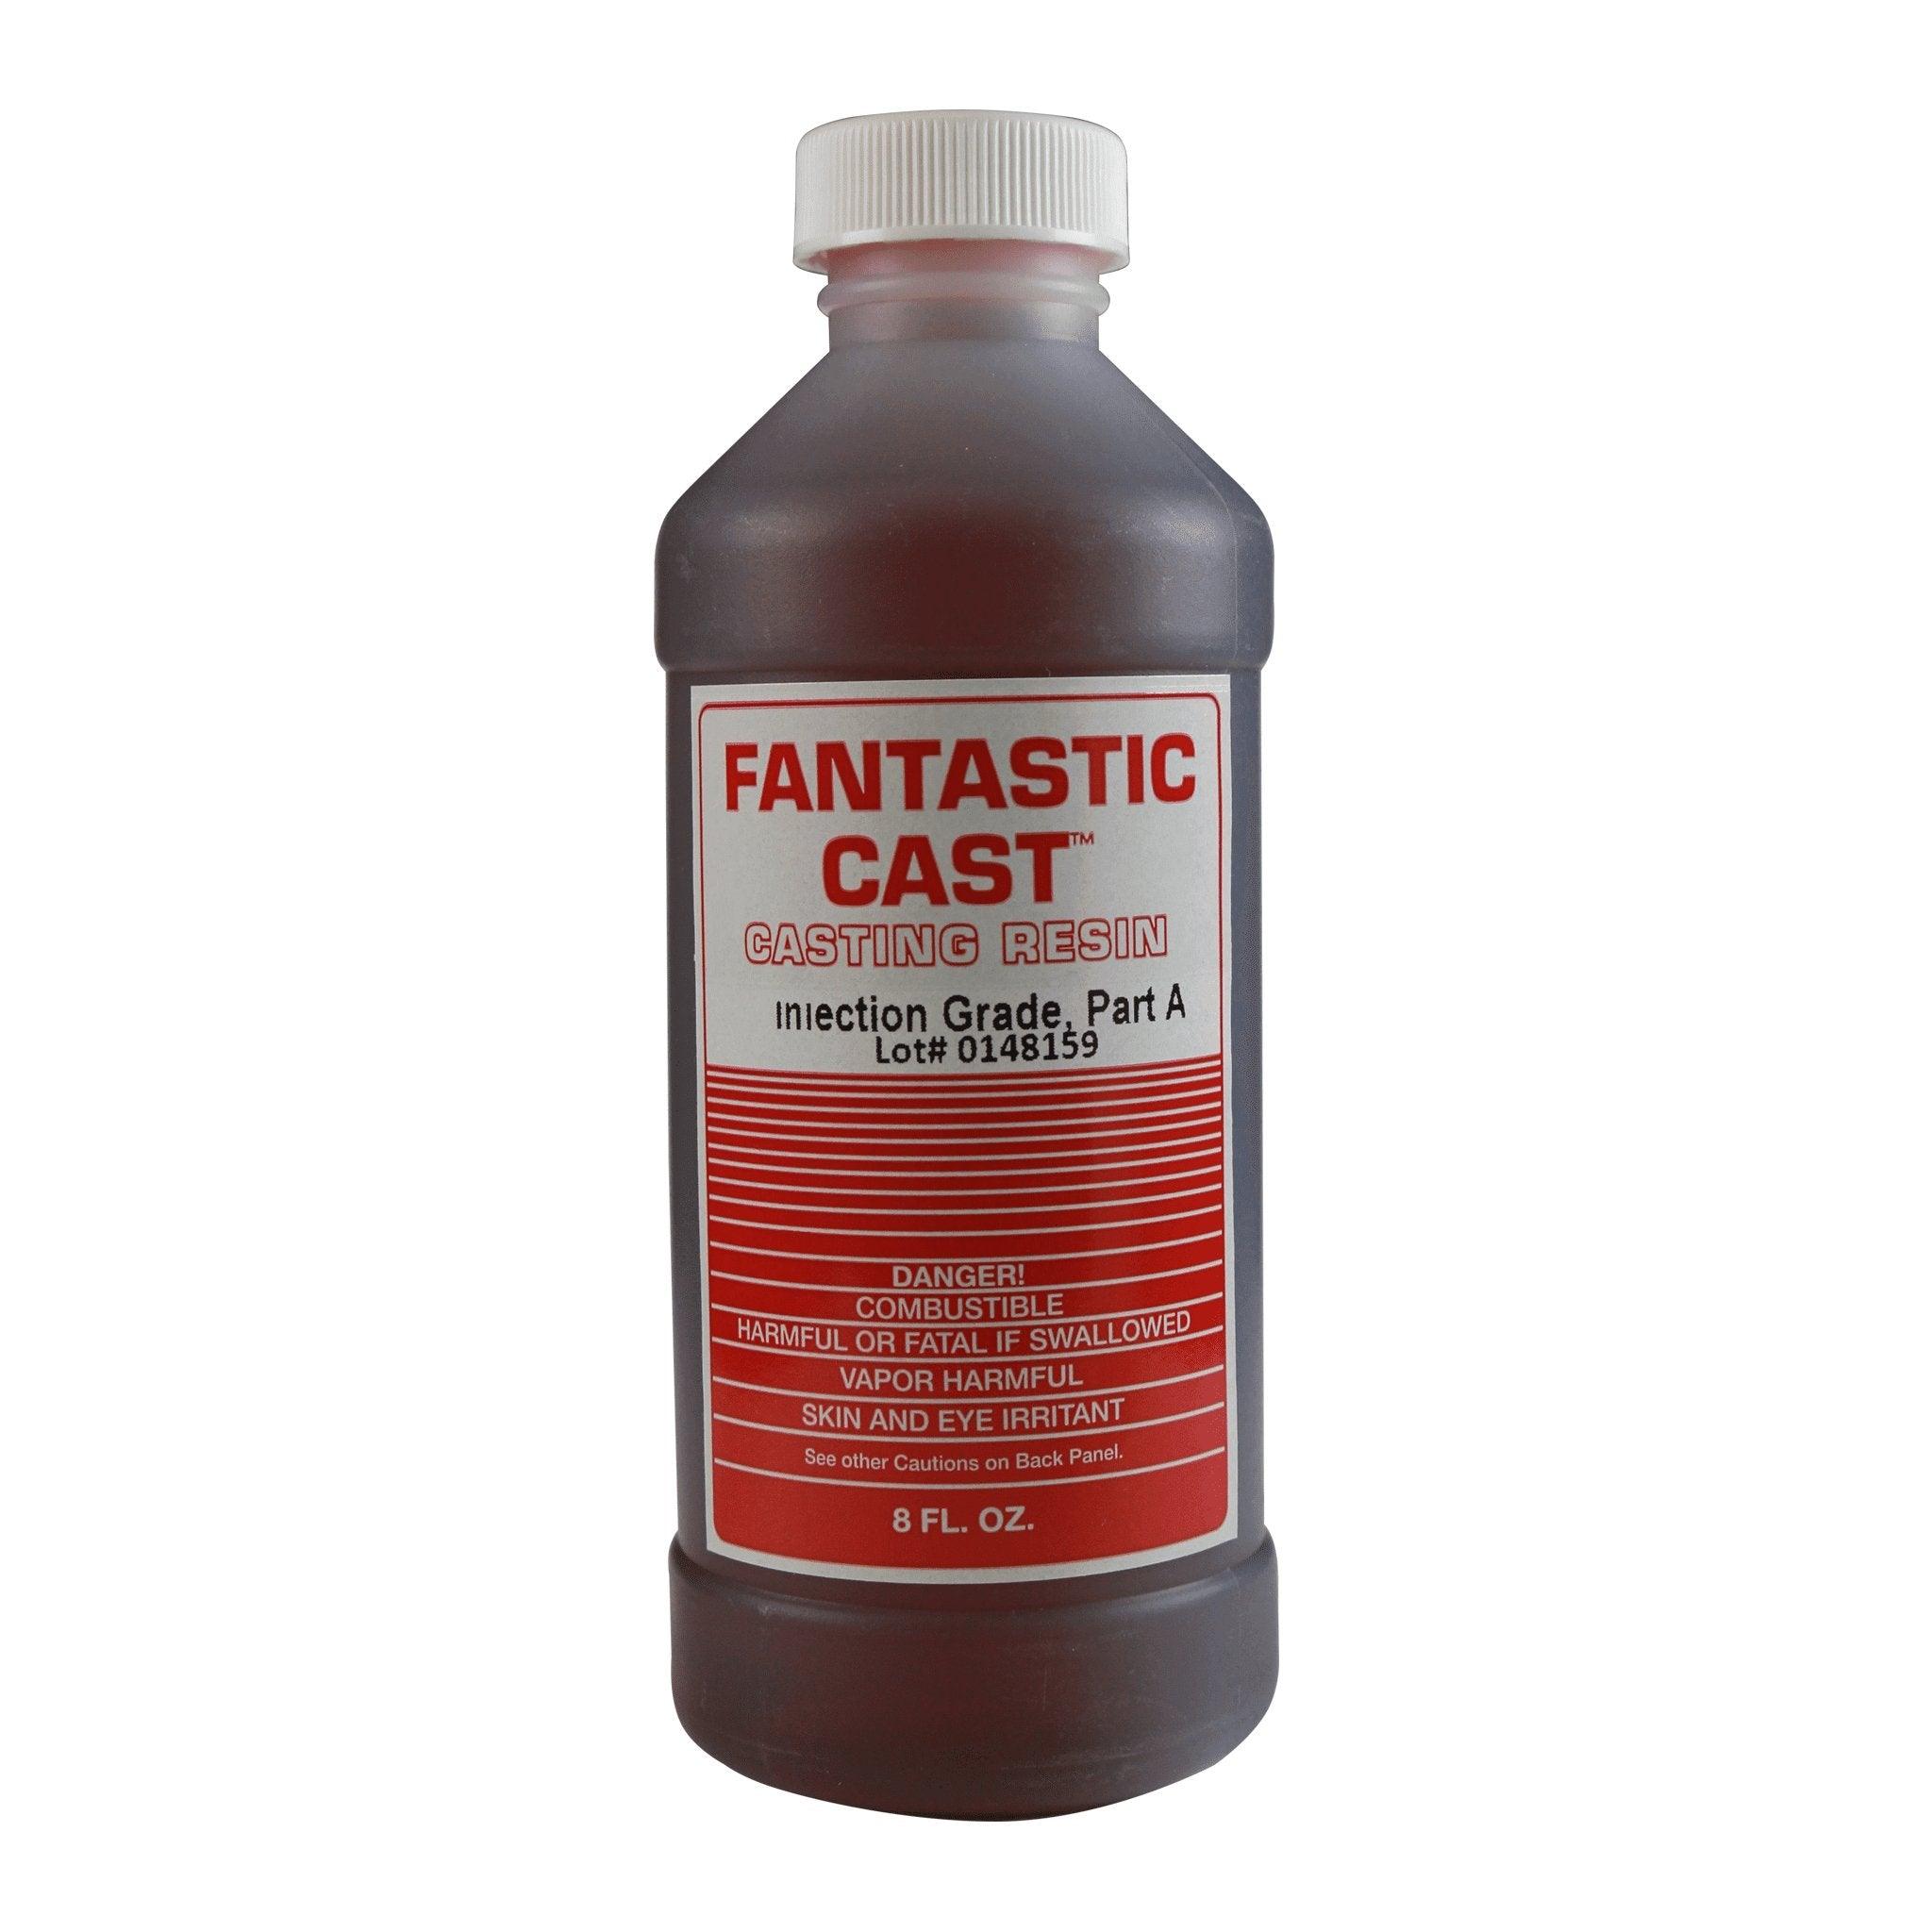 Fantastic Cast - Matuska Taxidermy Supply Company